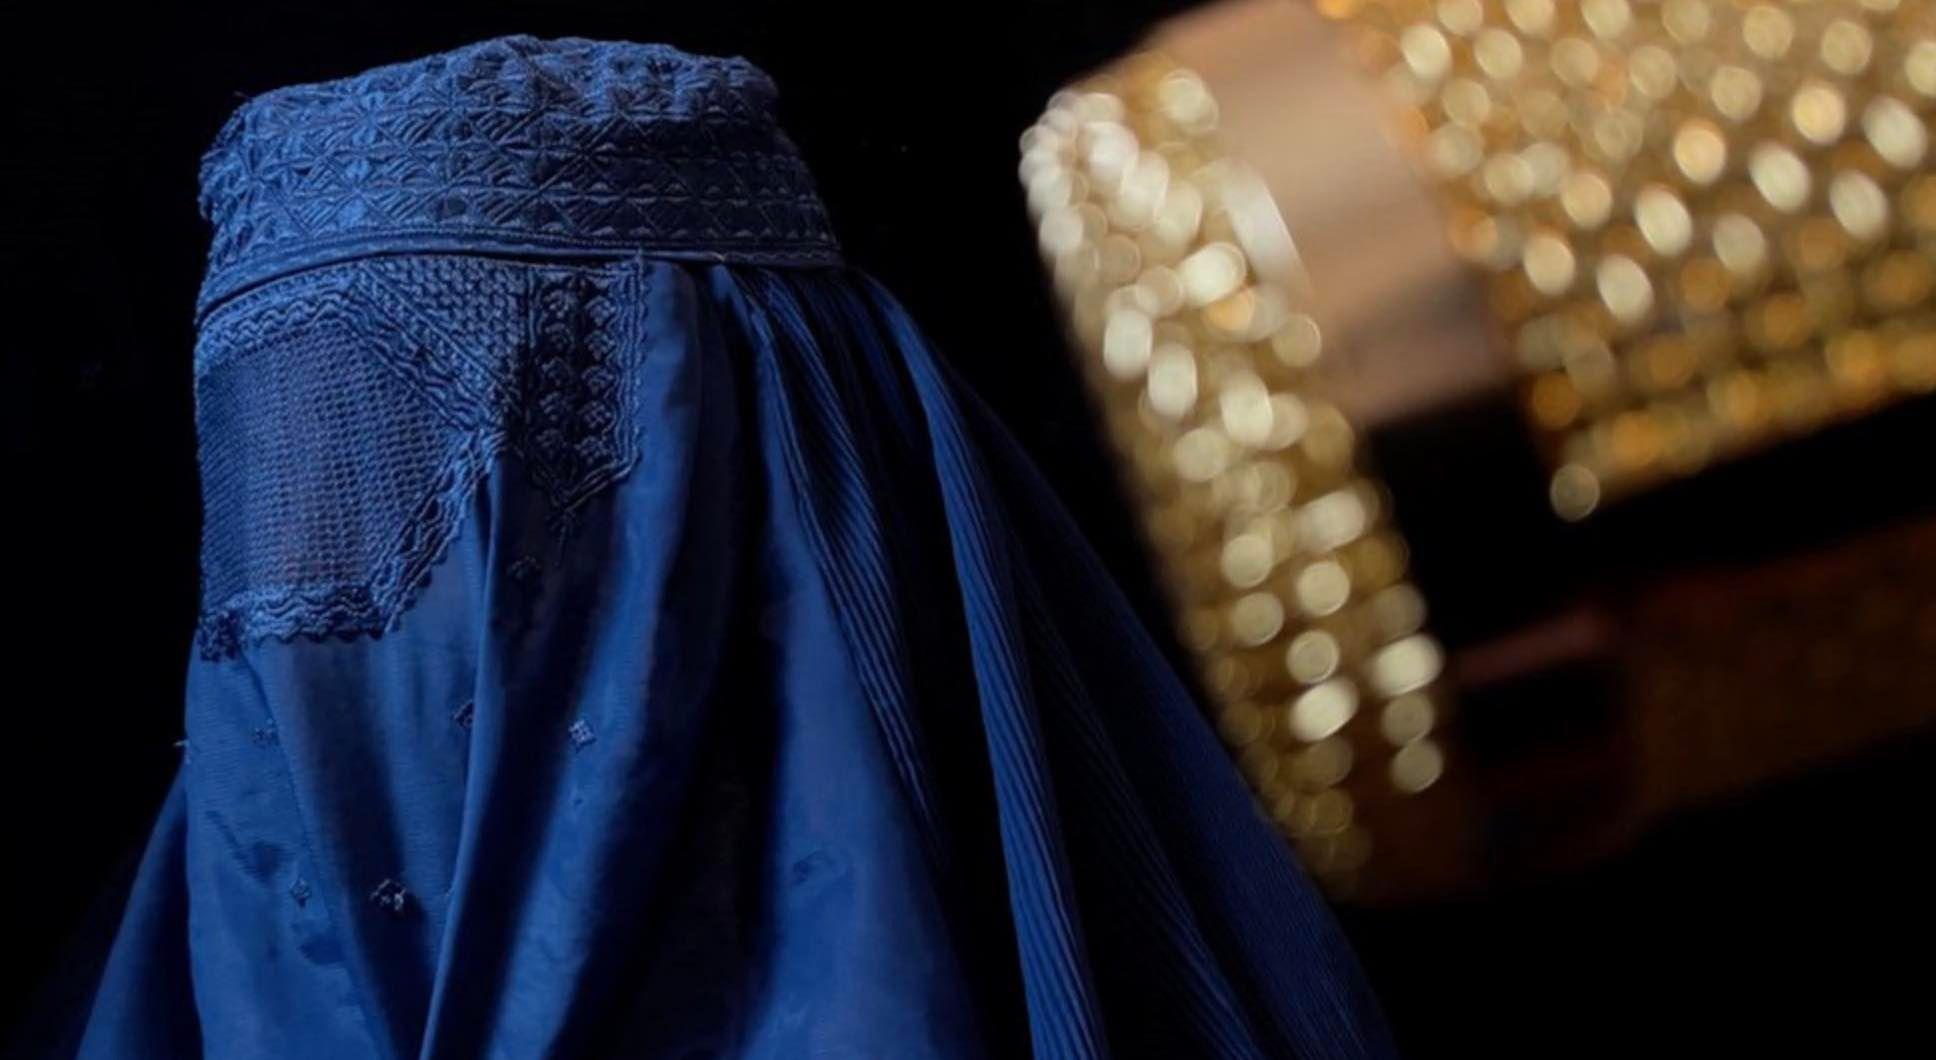 Una de las hermanas canta protegida bajo una burka. 